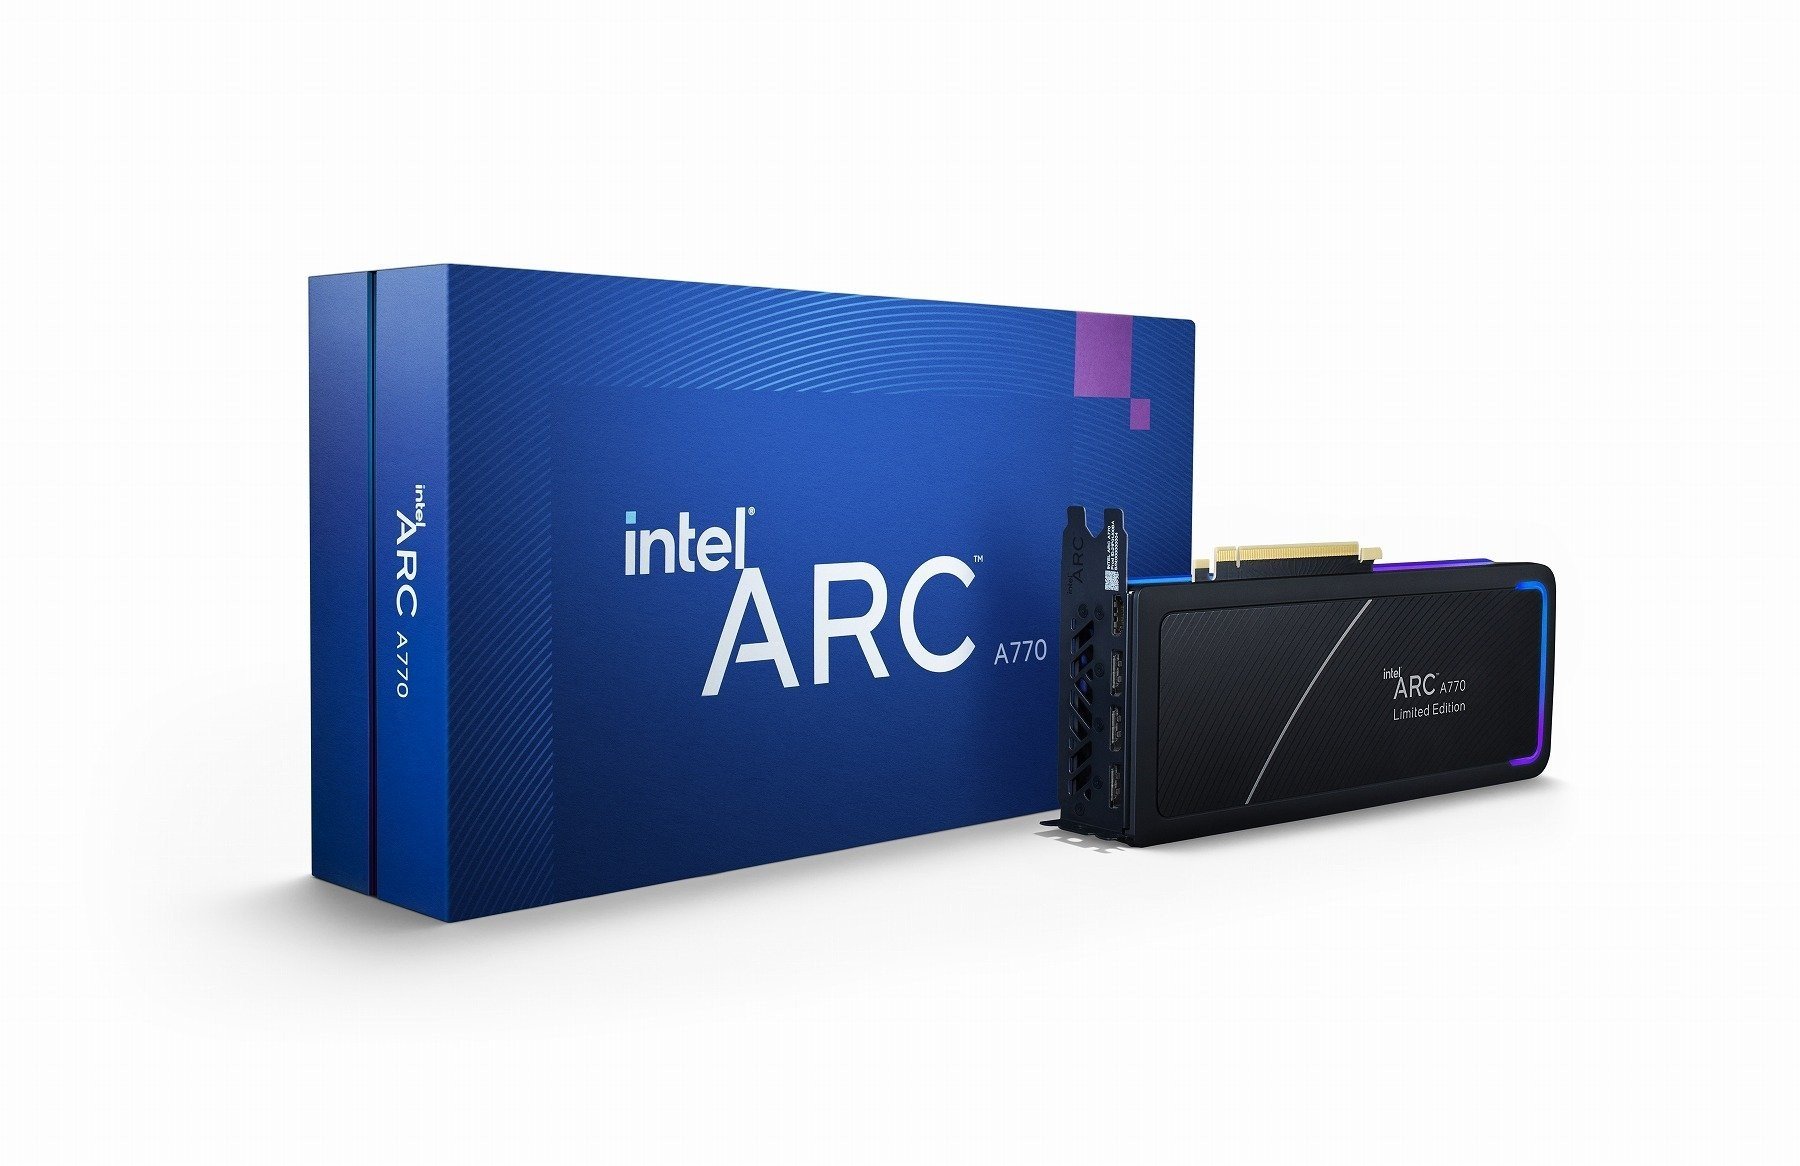 Флагманская видеокарта Intel Arc А770 выйдет 12 октября ее цена удивительно низкая